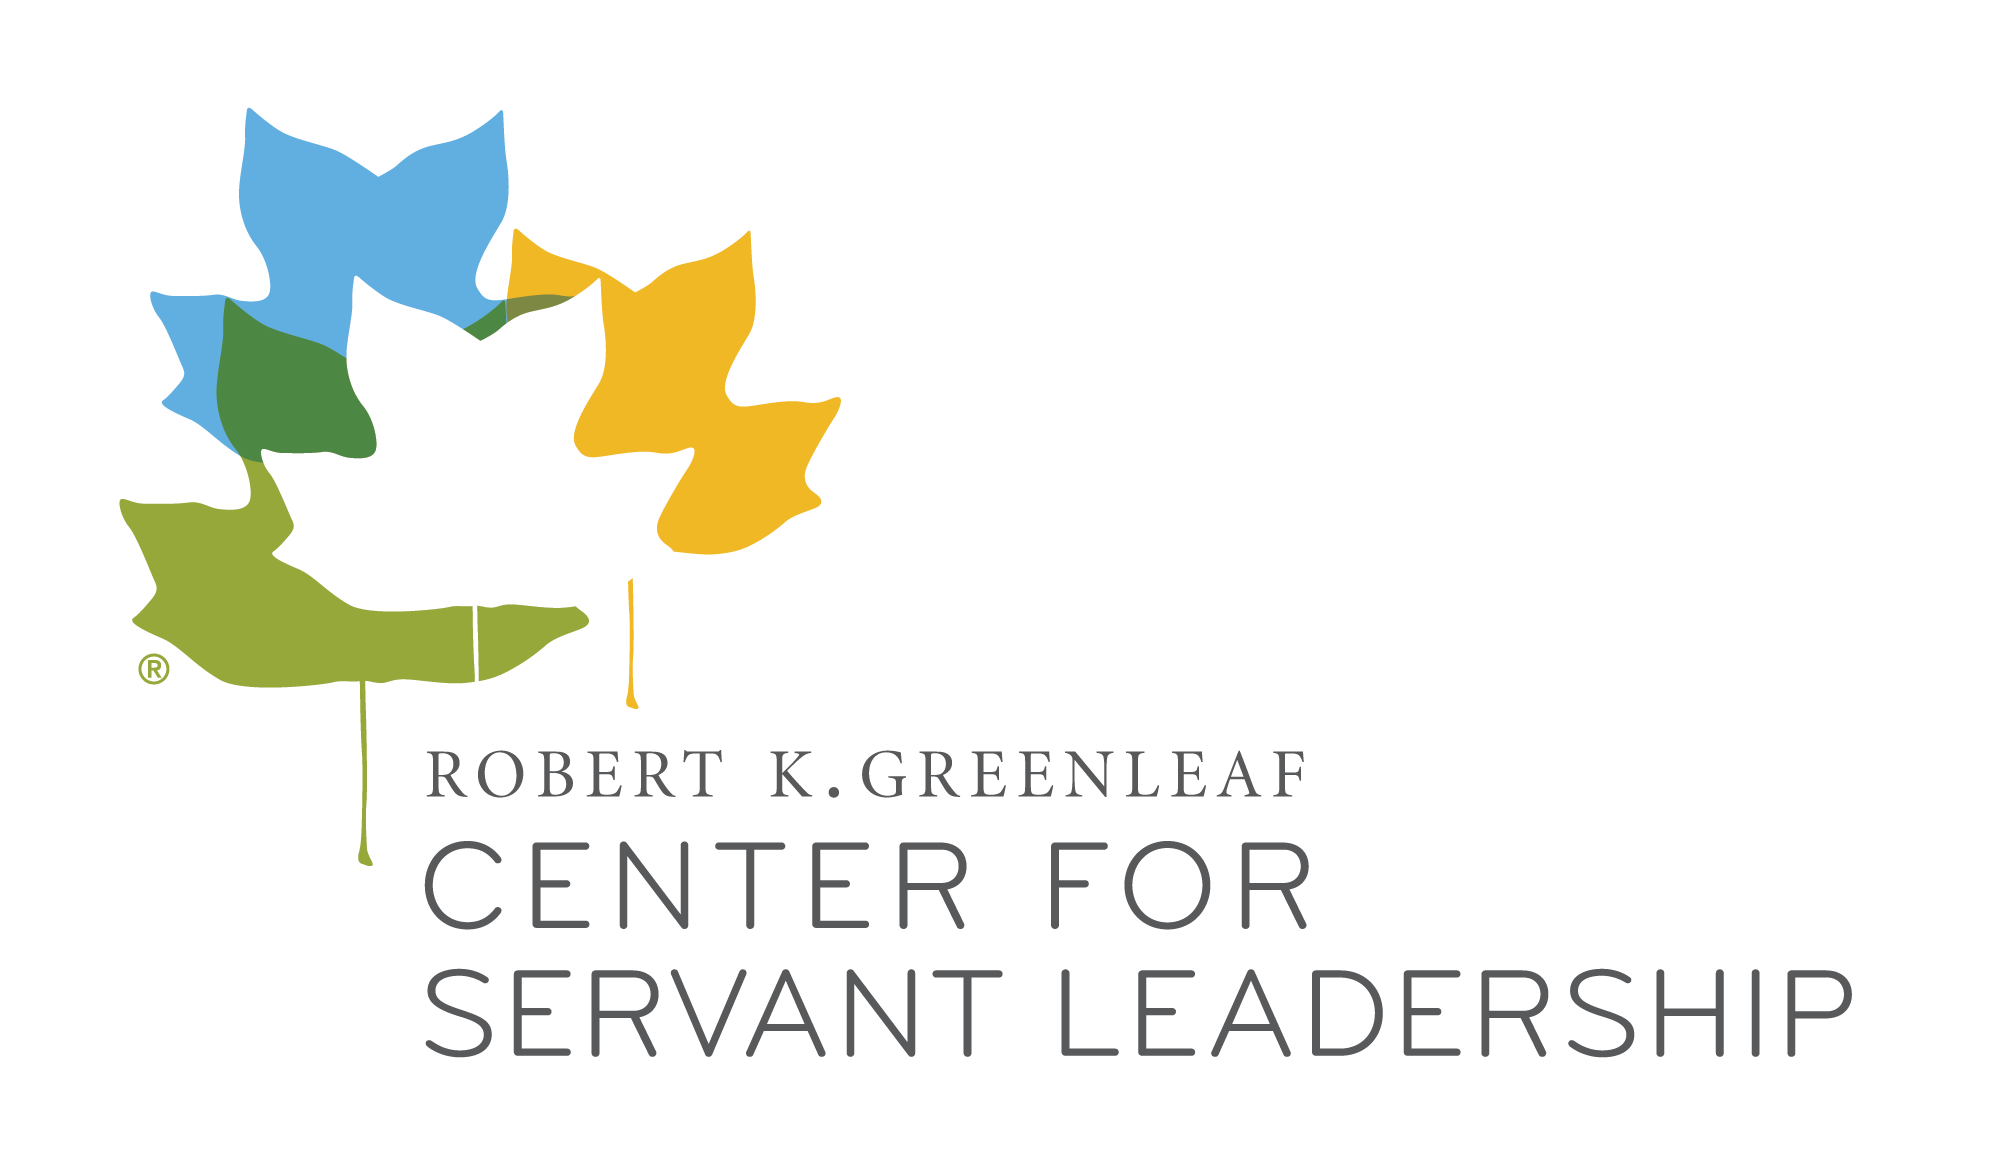 Greenleaf Center for Servant Leadership